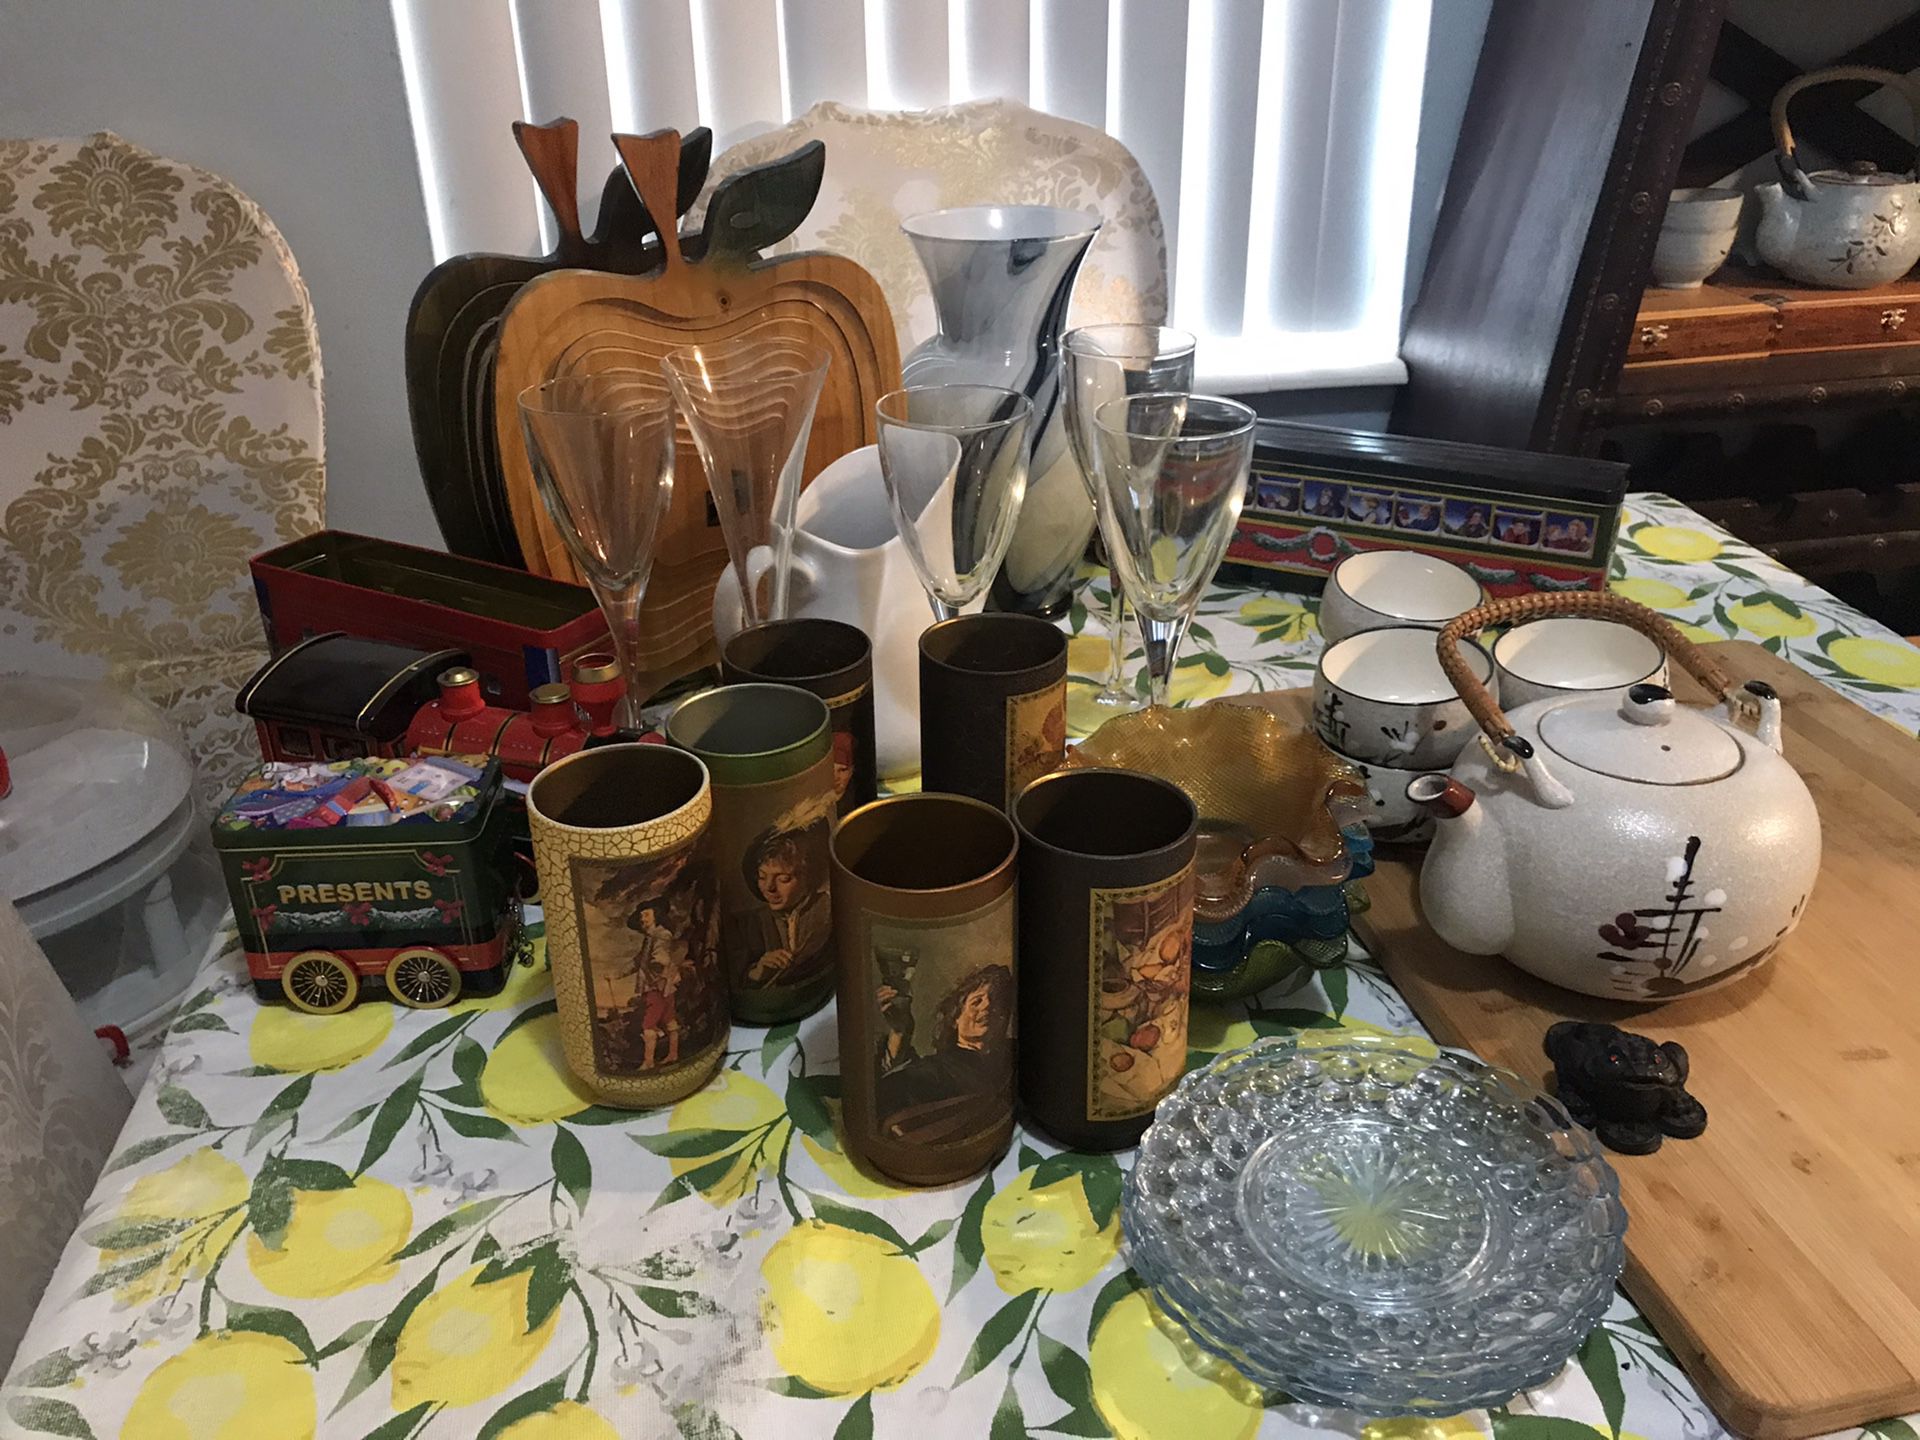 36 pieces wine glass/ tea pot/tea cups/ plates/ bowls/ vase